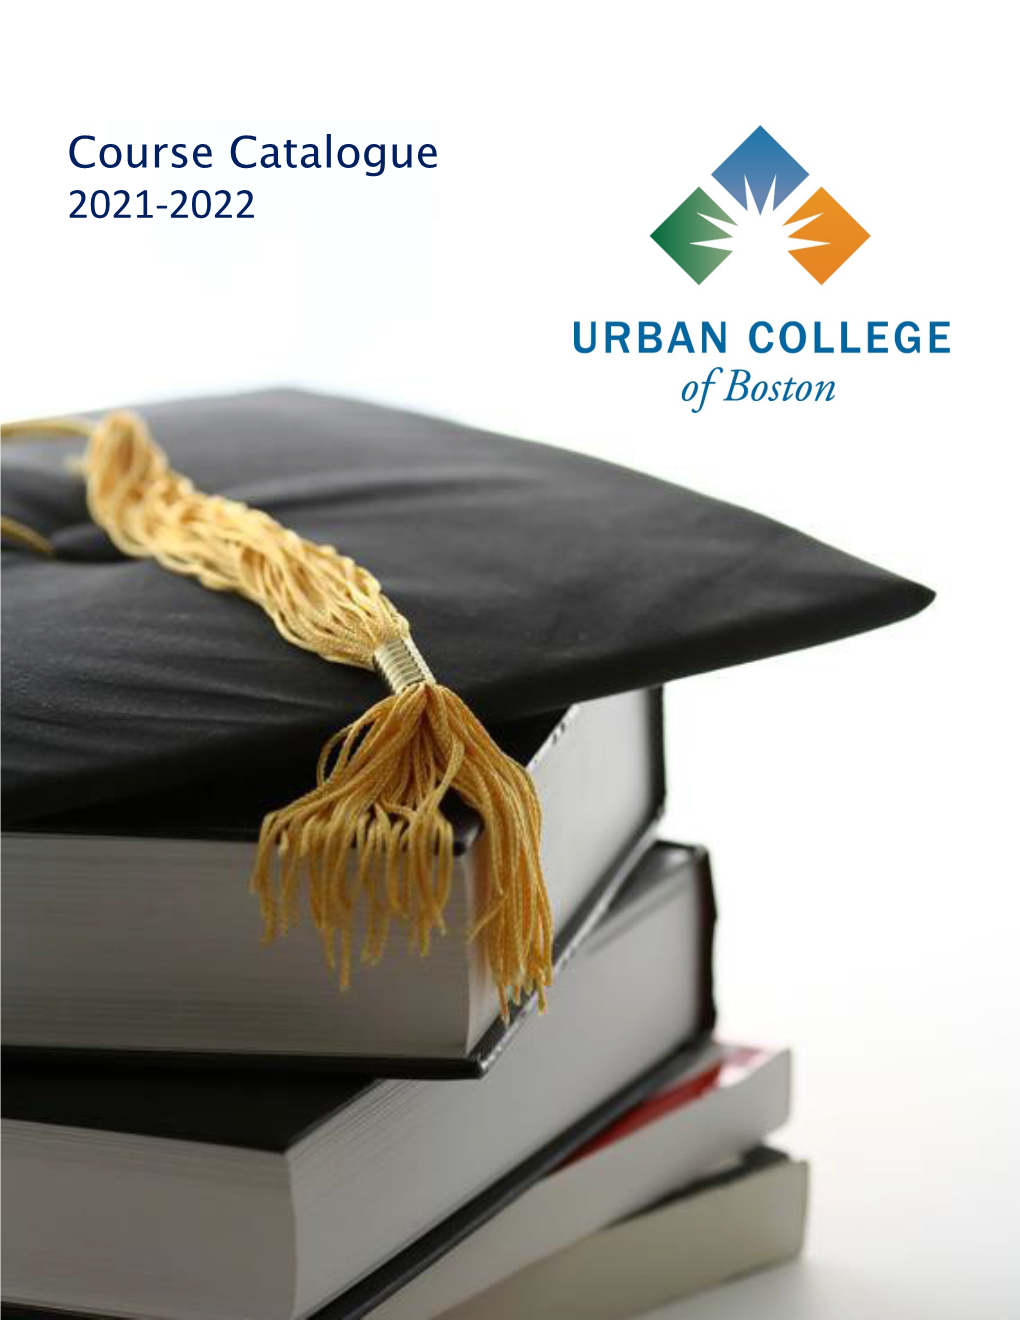 Course Catalogue 2021-2022